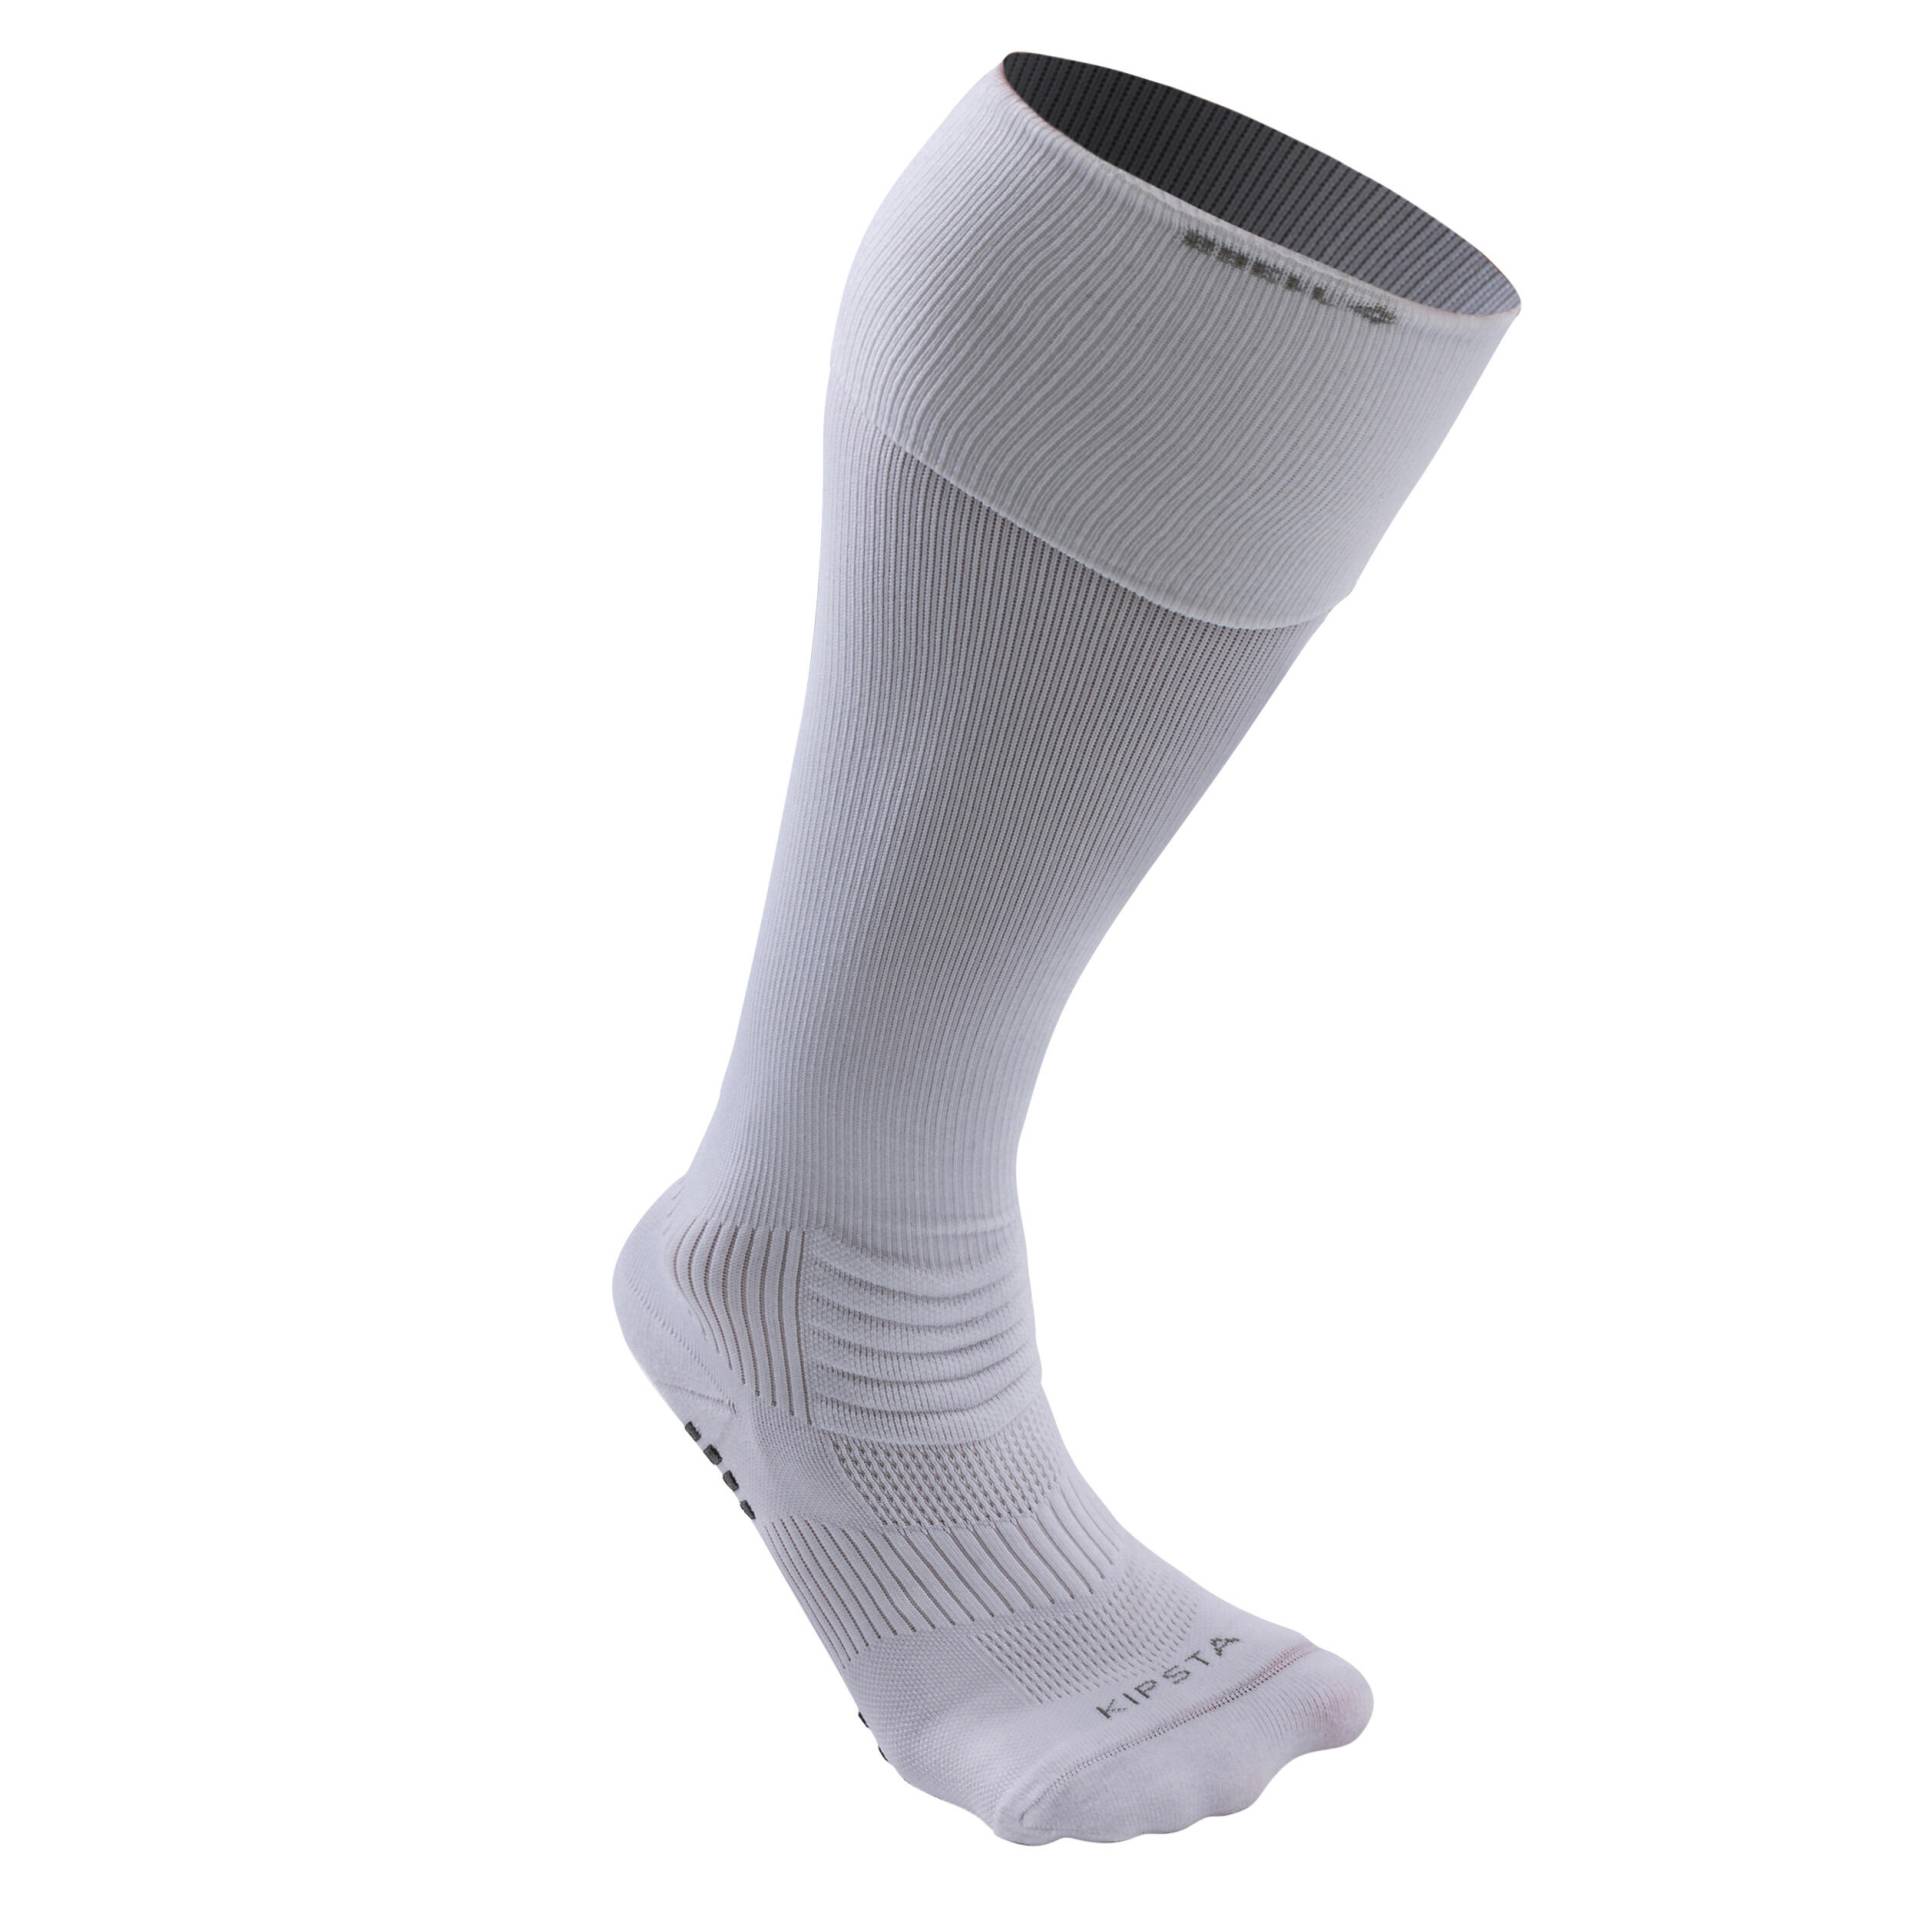 Damen/Herren Fussball Stutzen mit rutschfesten Socken - Viralto II weiss von KIPSTA